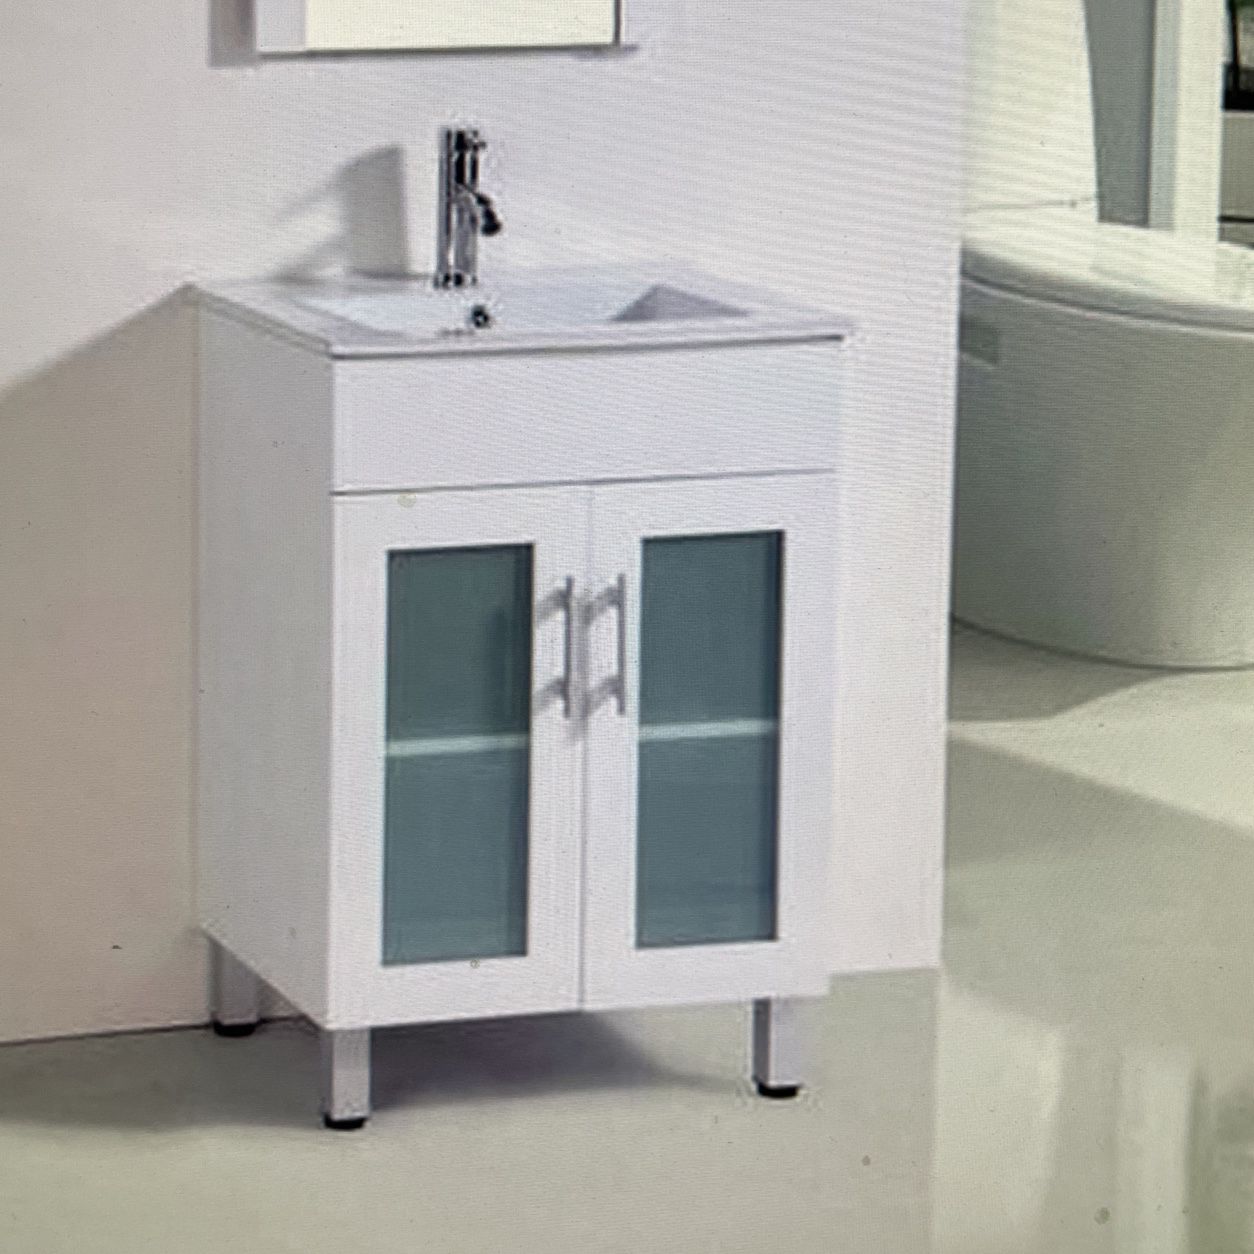 Price Drop ! 24” Bathroom vanity blow Out sale $179